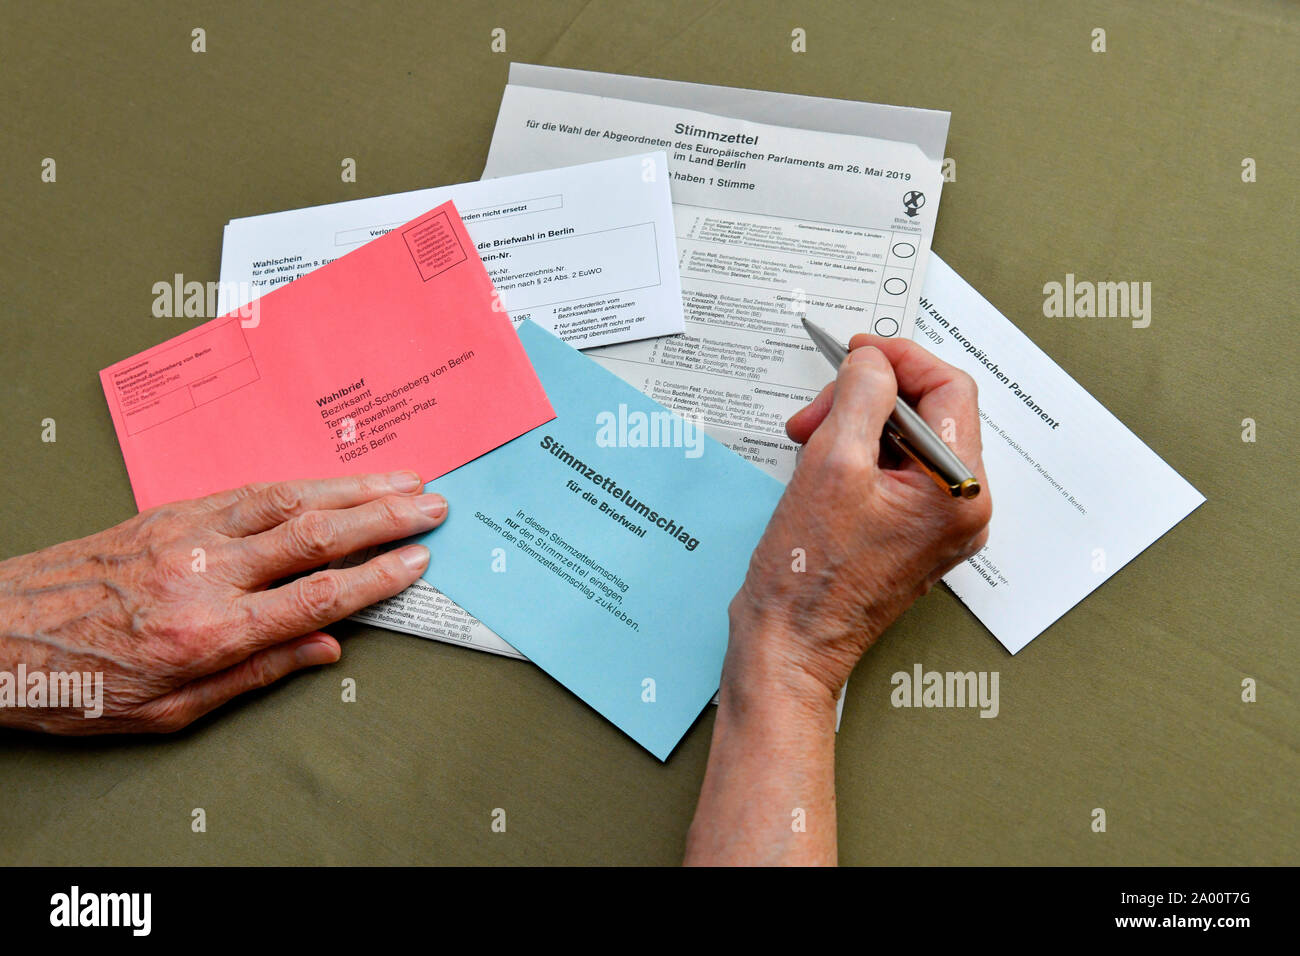 Briefwahlunterlagen mit Stimmzettel, fuer die Wahl zum 9. Europaeischen Parlament am 26. Mai 2019 Stock Photo